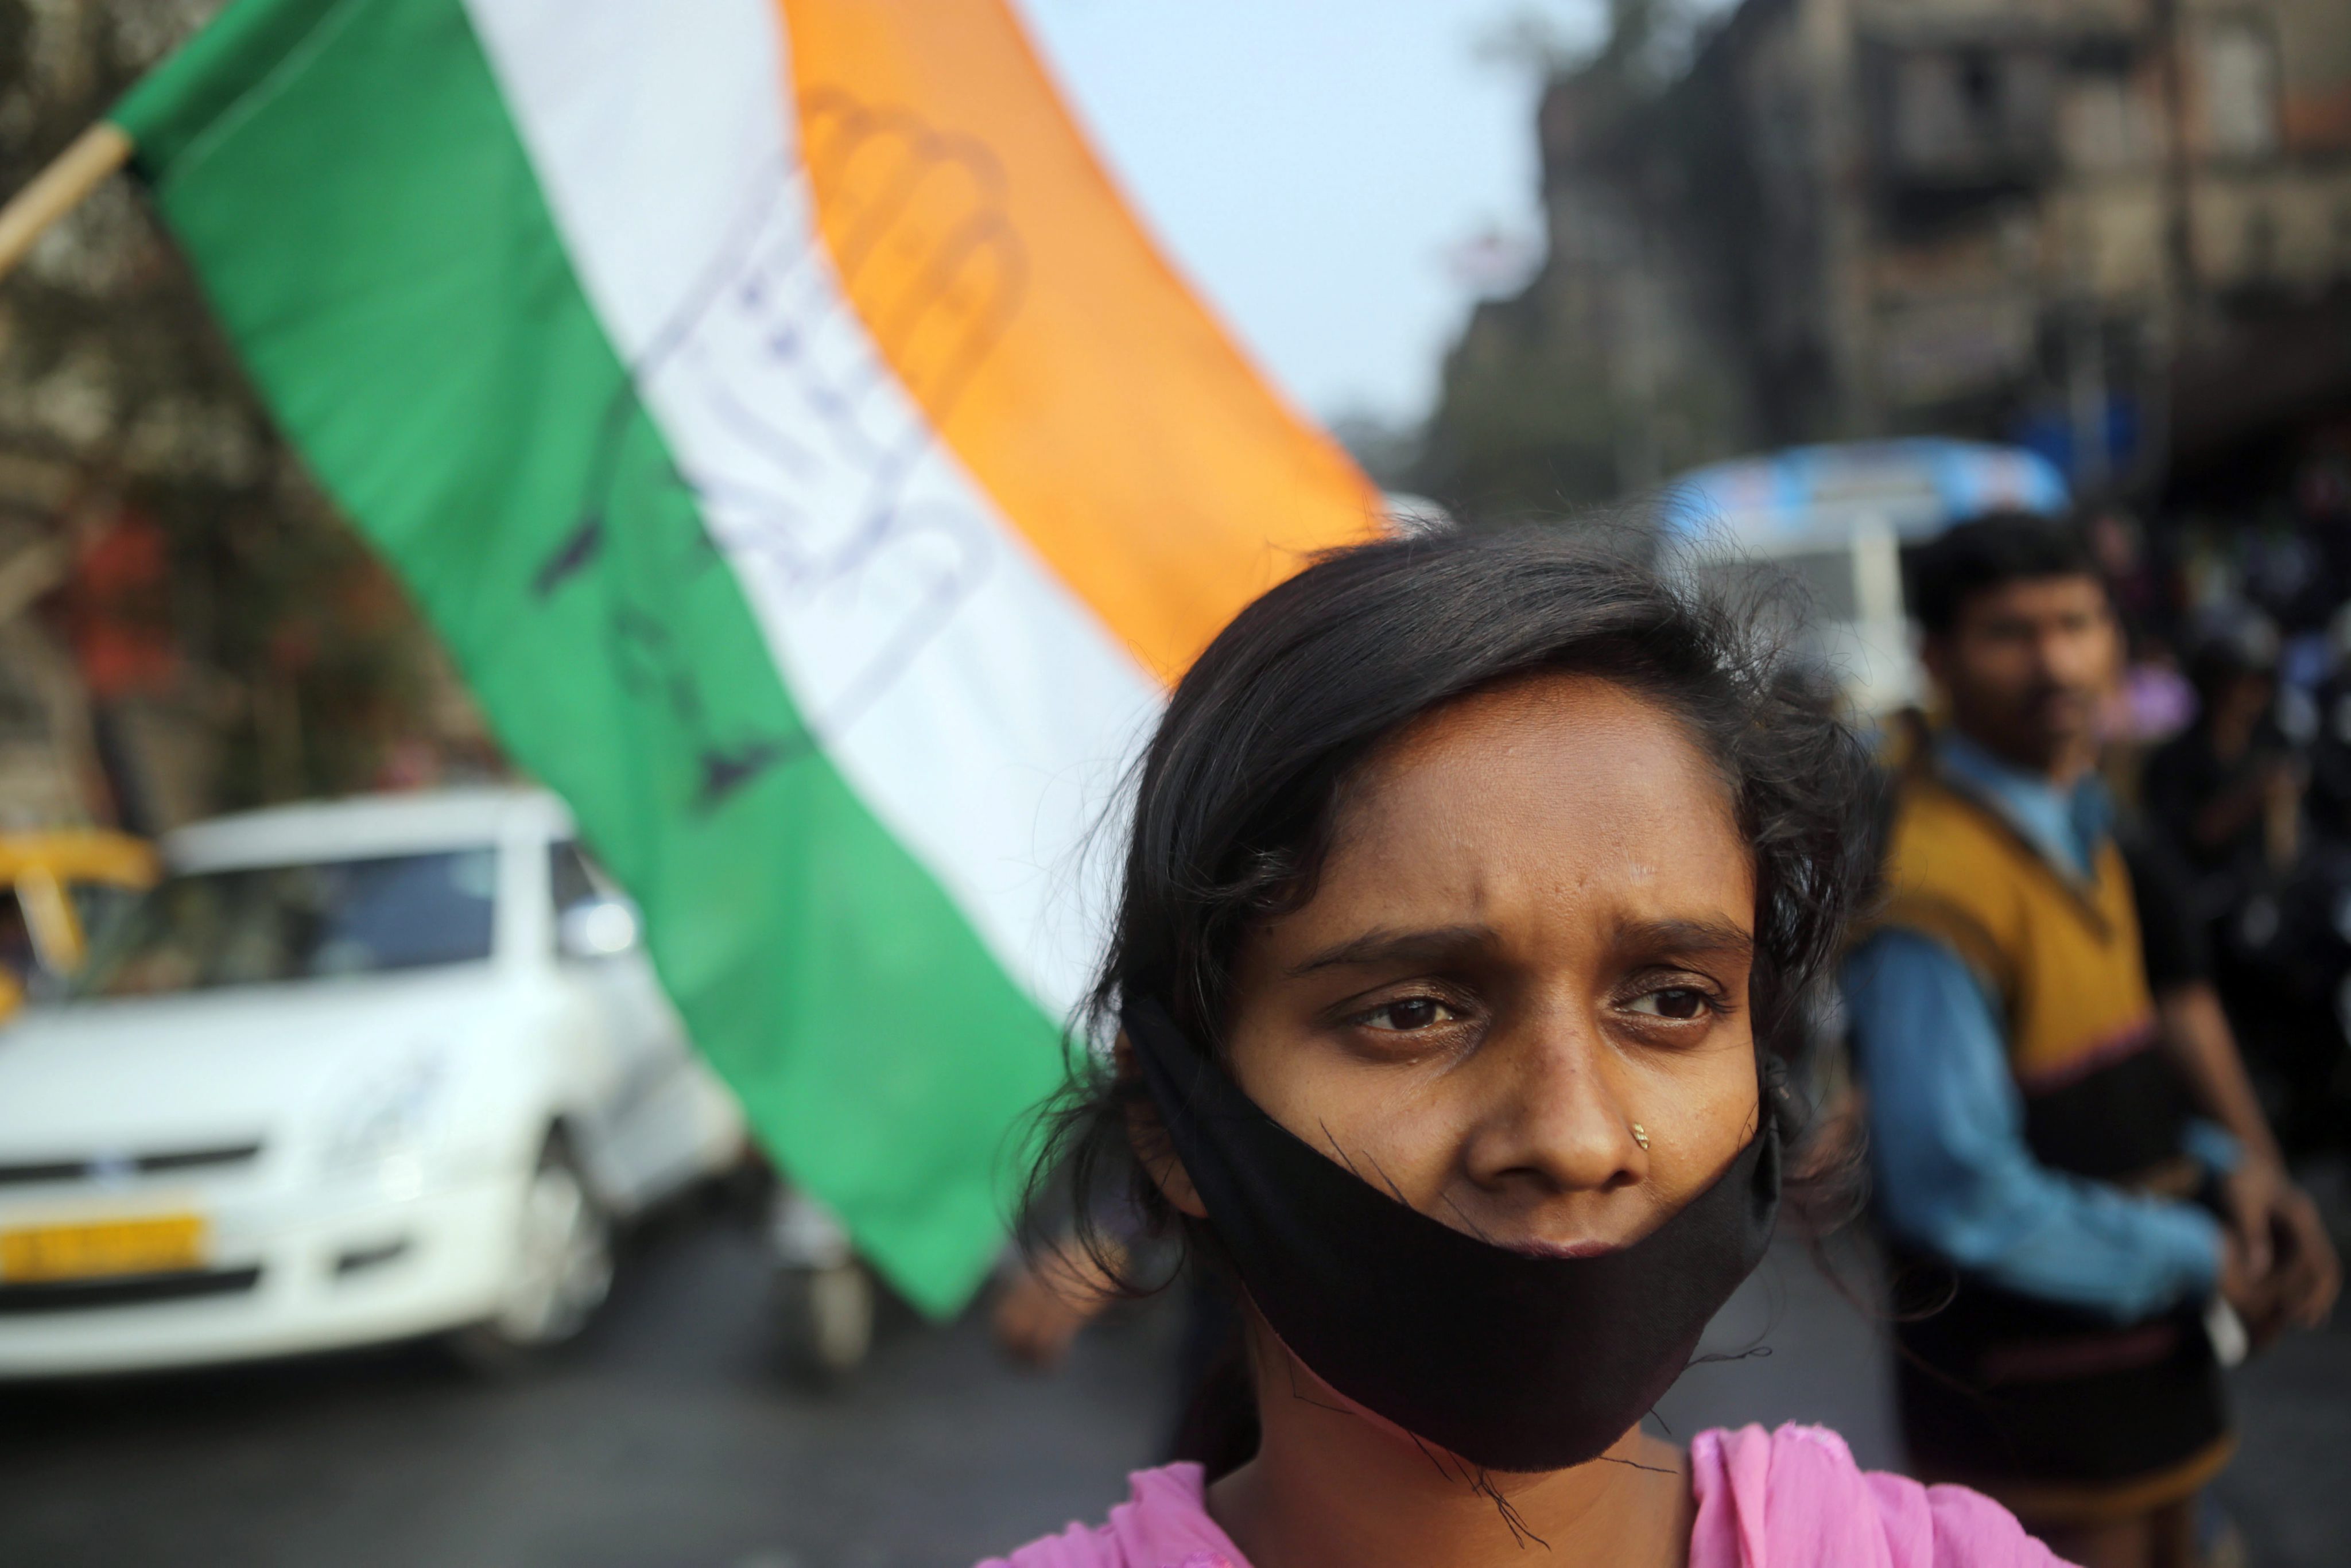 Βίασαν ομαδικά 20χρονη στην Ινδία για να την «τιμωρήσουν»